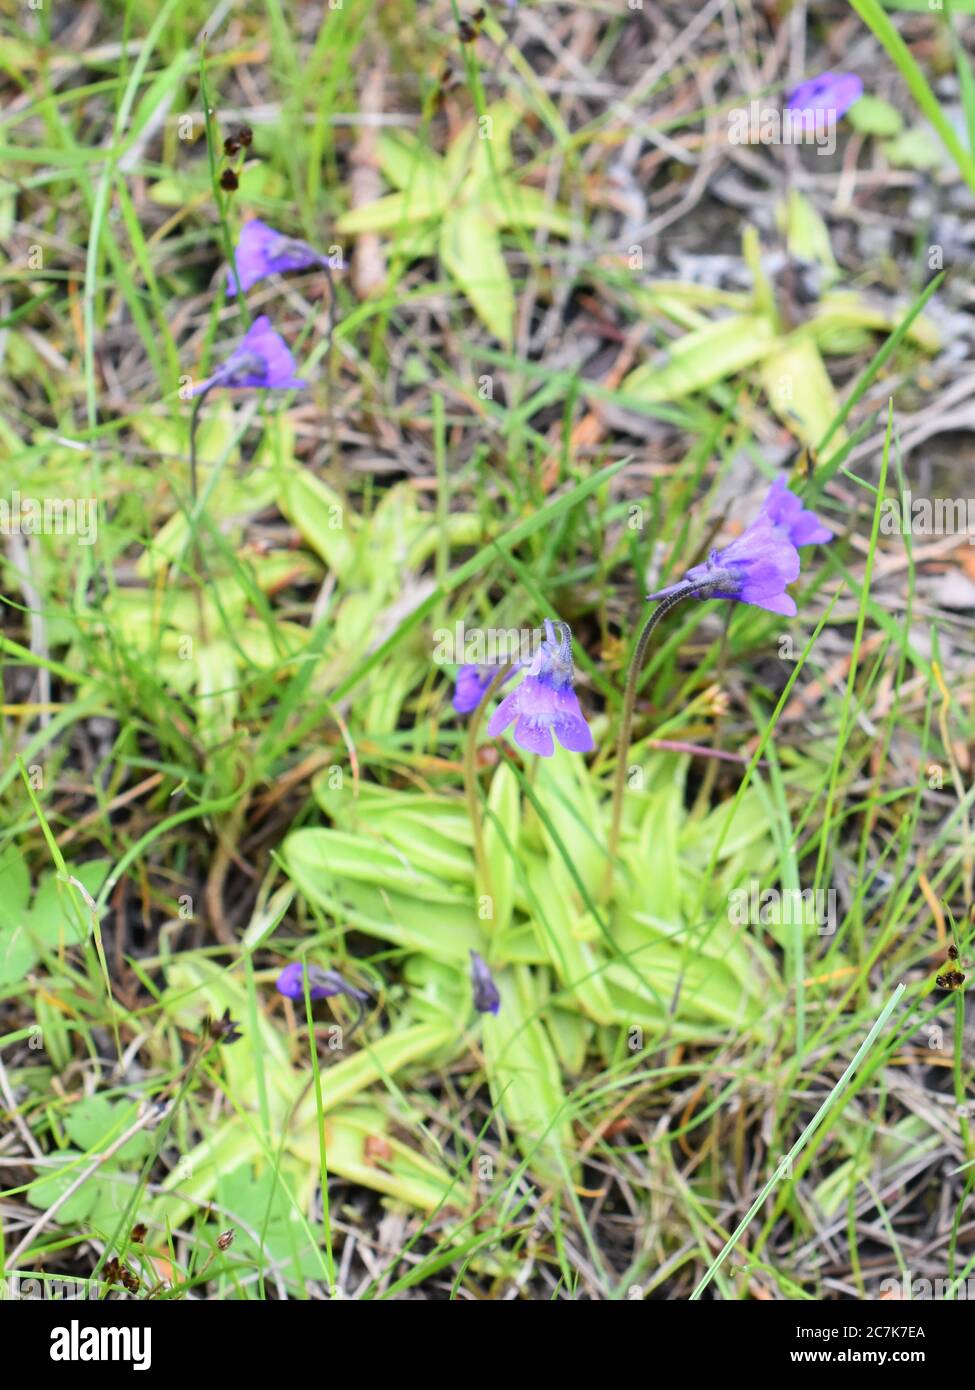 Die Insektenfresser Pflanze gemeine Butterblume Pinguicula vulgaris klebrige Rosette und lila Blume in der natürlichen Umgebung Stockfoto